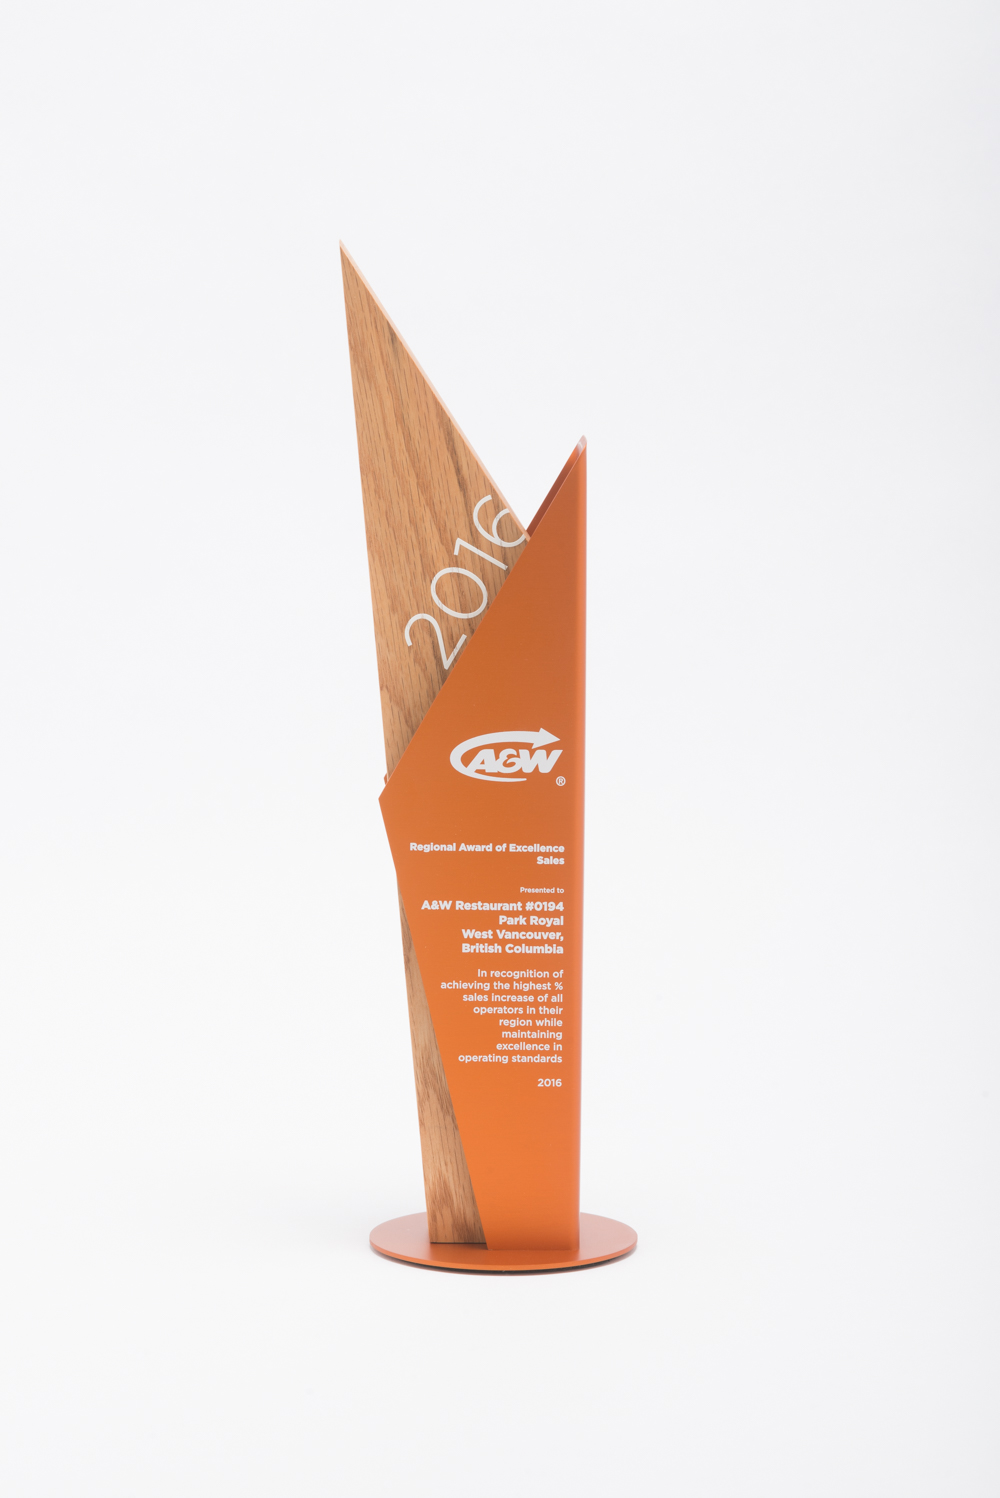 unique award trophy corporate recognition 